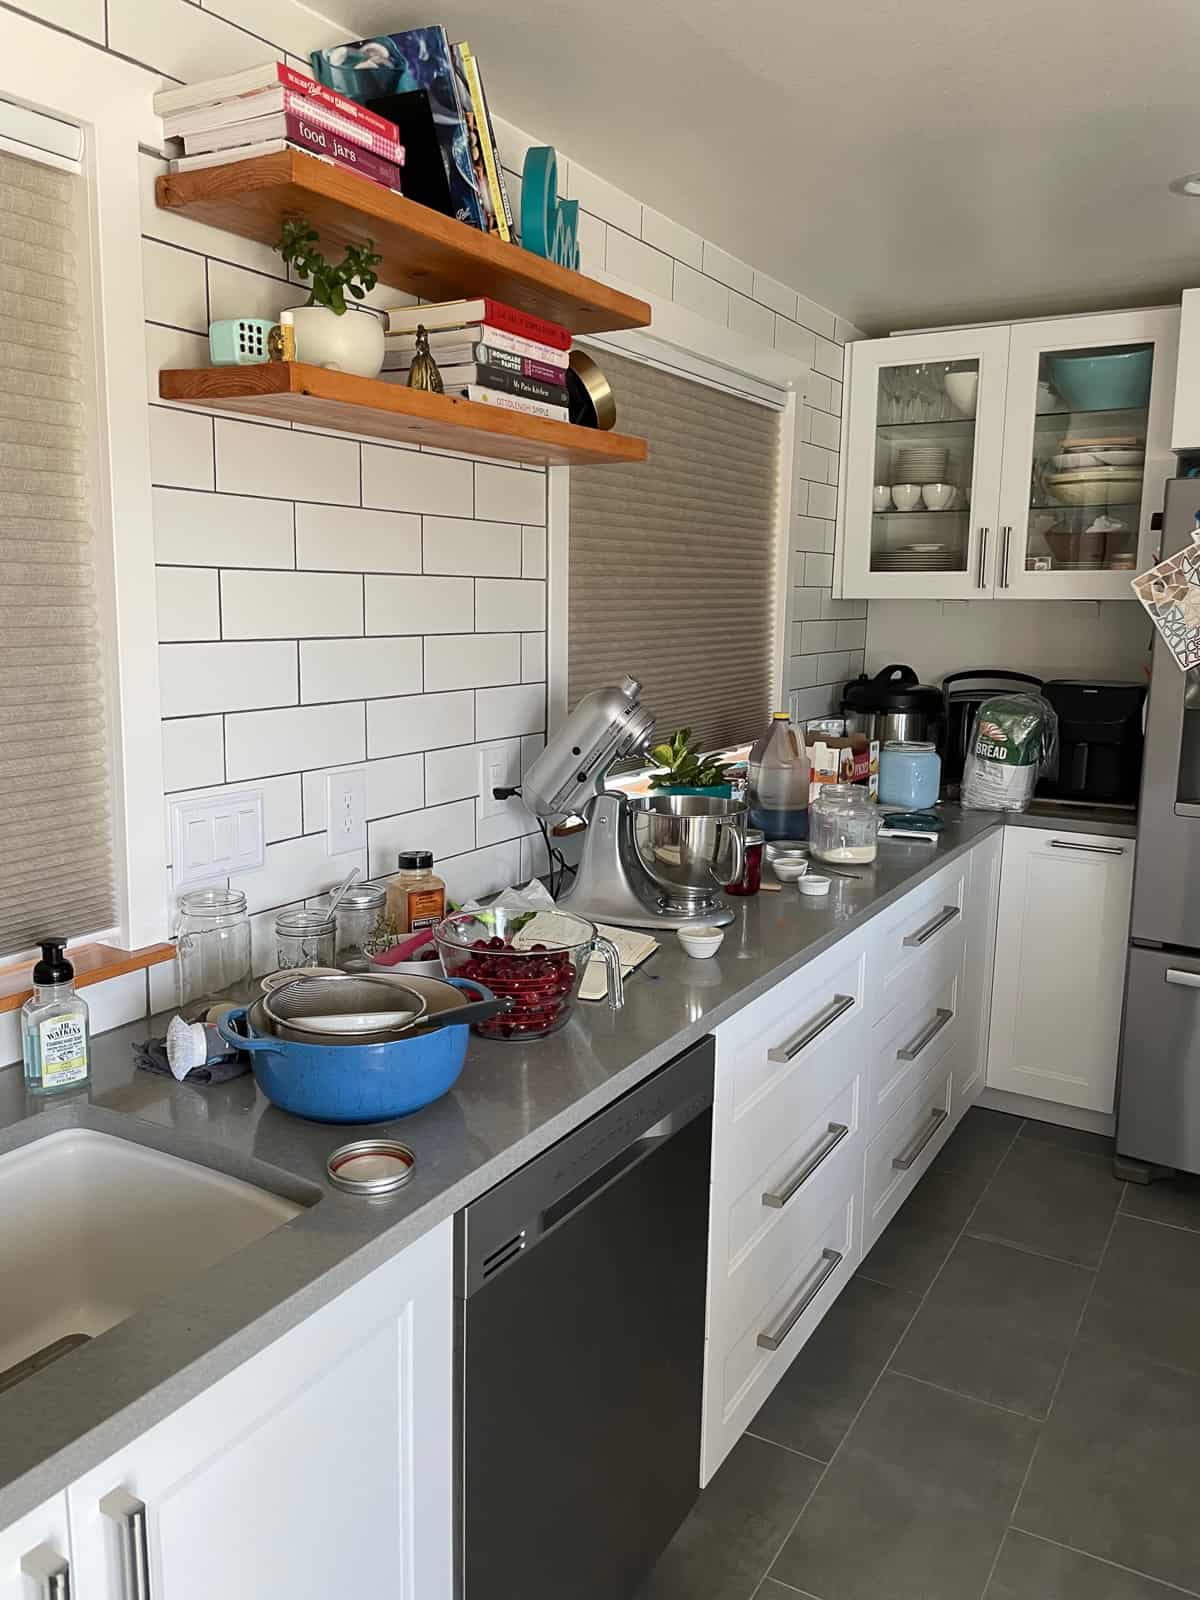 a messy kitchen.